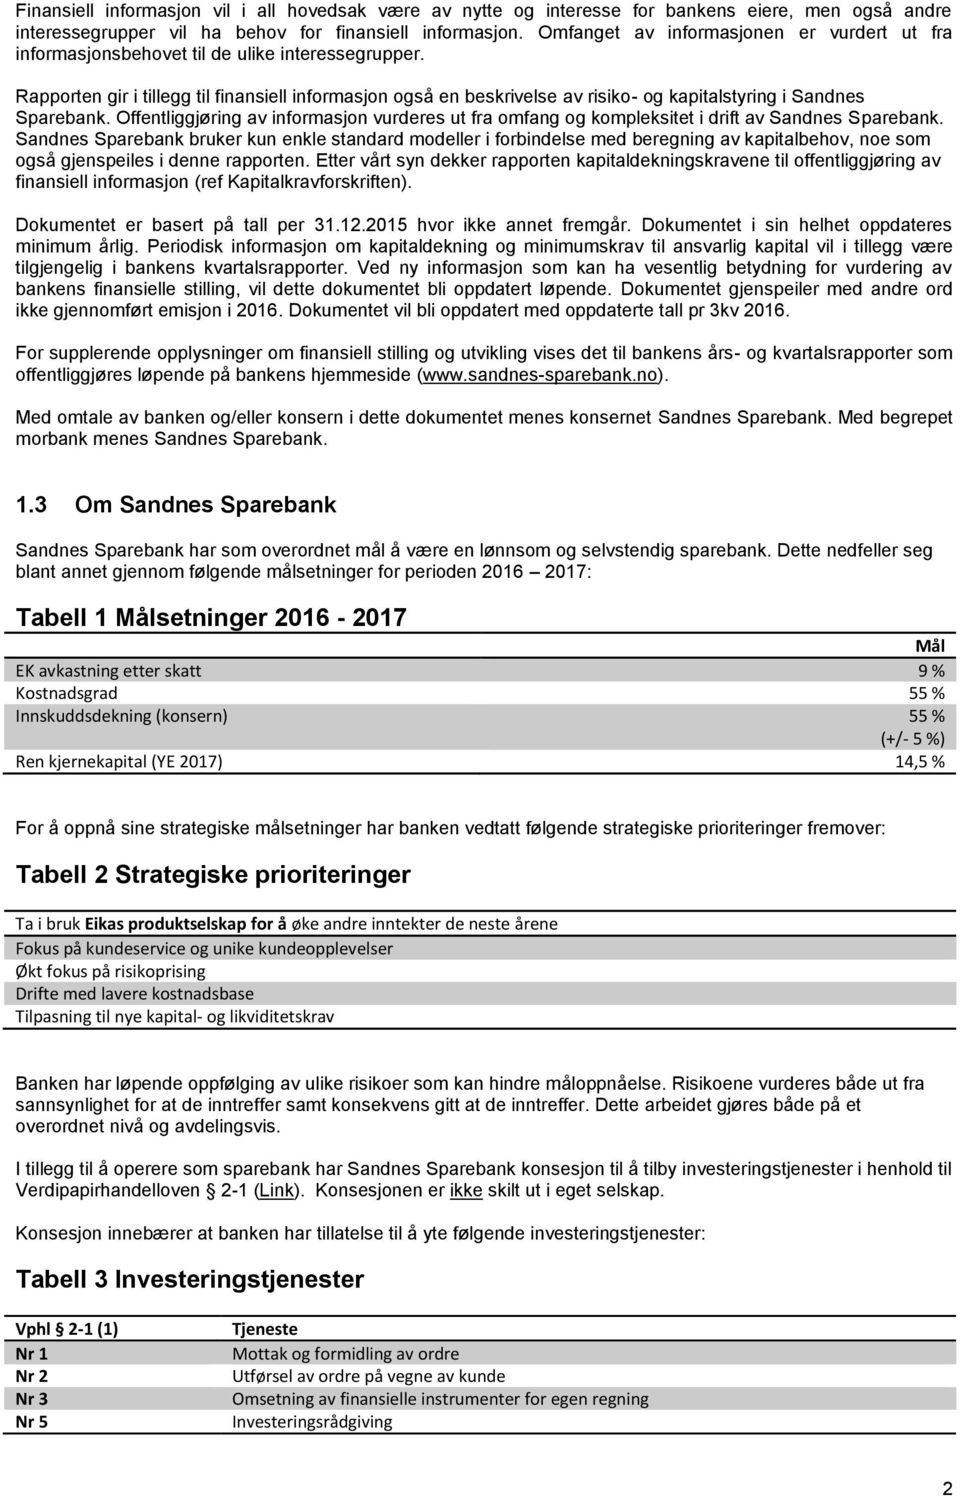 Rapporten gir i tillegg til finansiell informasjon også en beskrivelse av risiko- og kapitalstyring i Sandnes Sparebank.